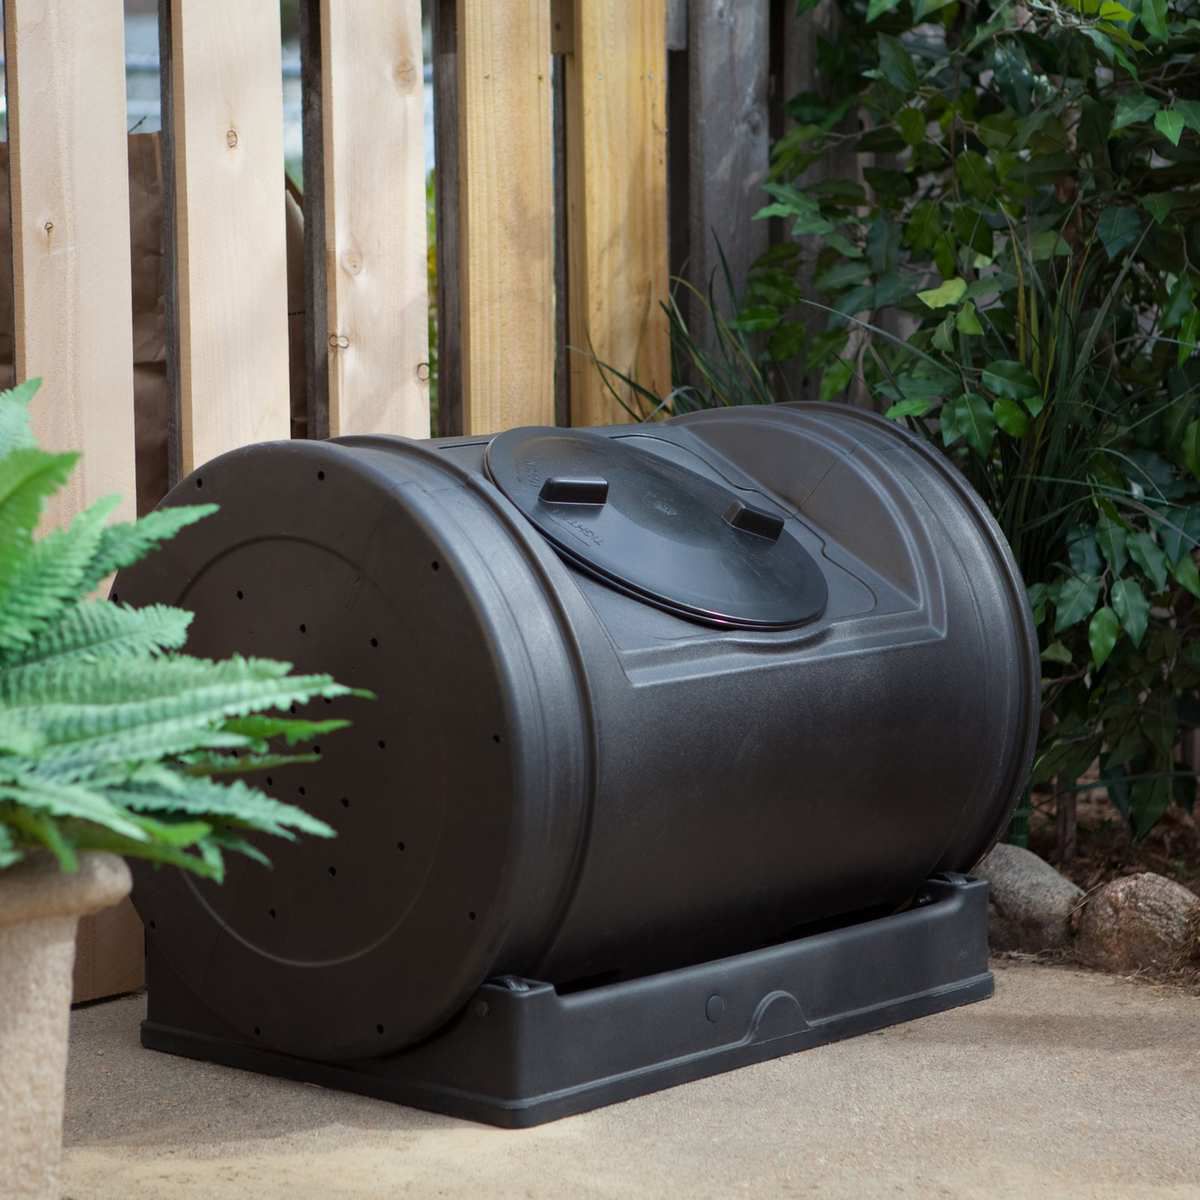 Black barrel-shaped bin in a yard.